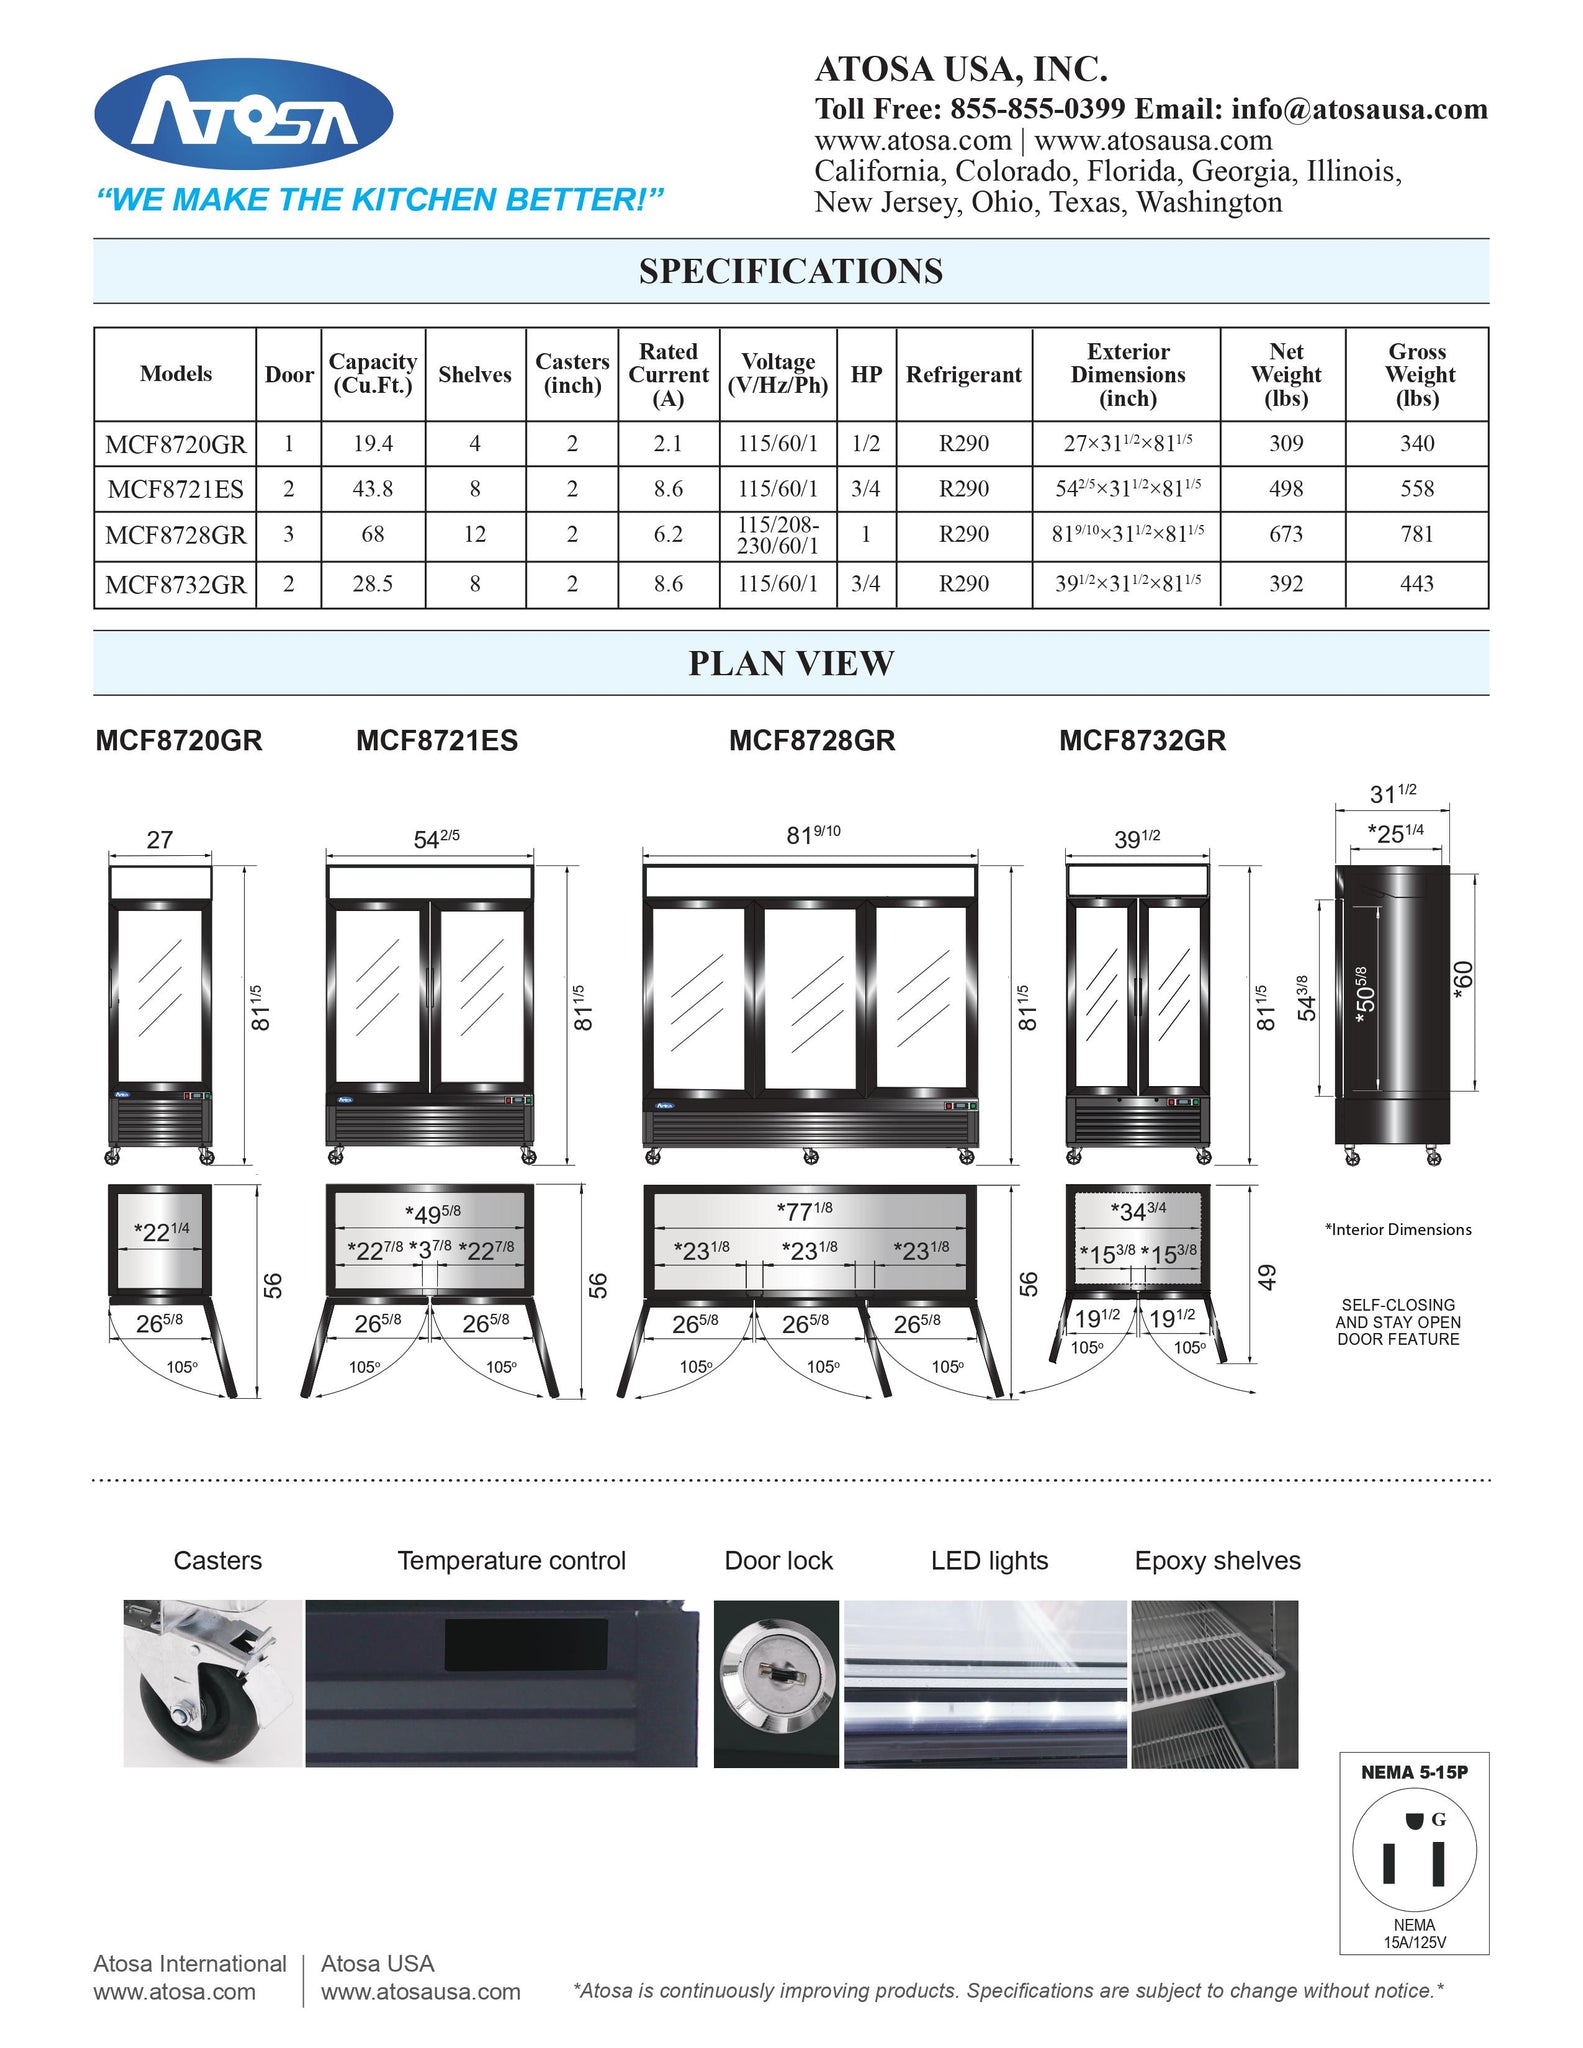 Atosa MCF8720GR 27" One Section Glass Door Merchandiser Freezer